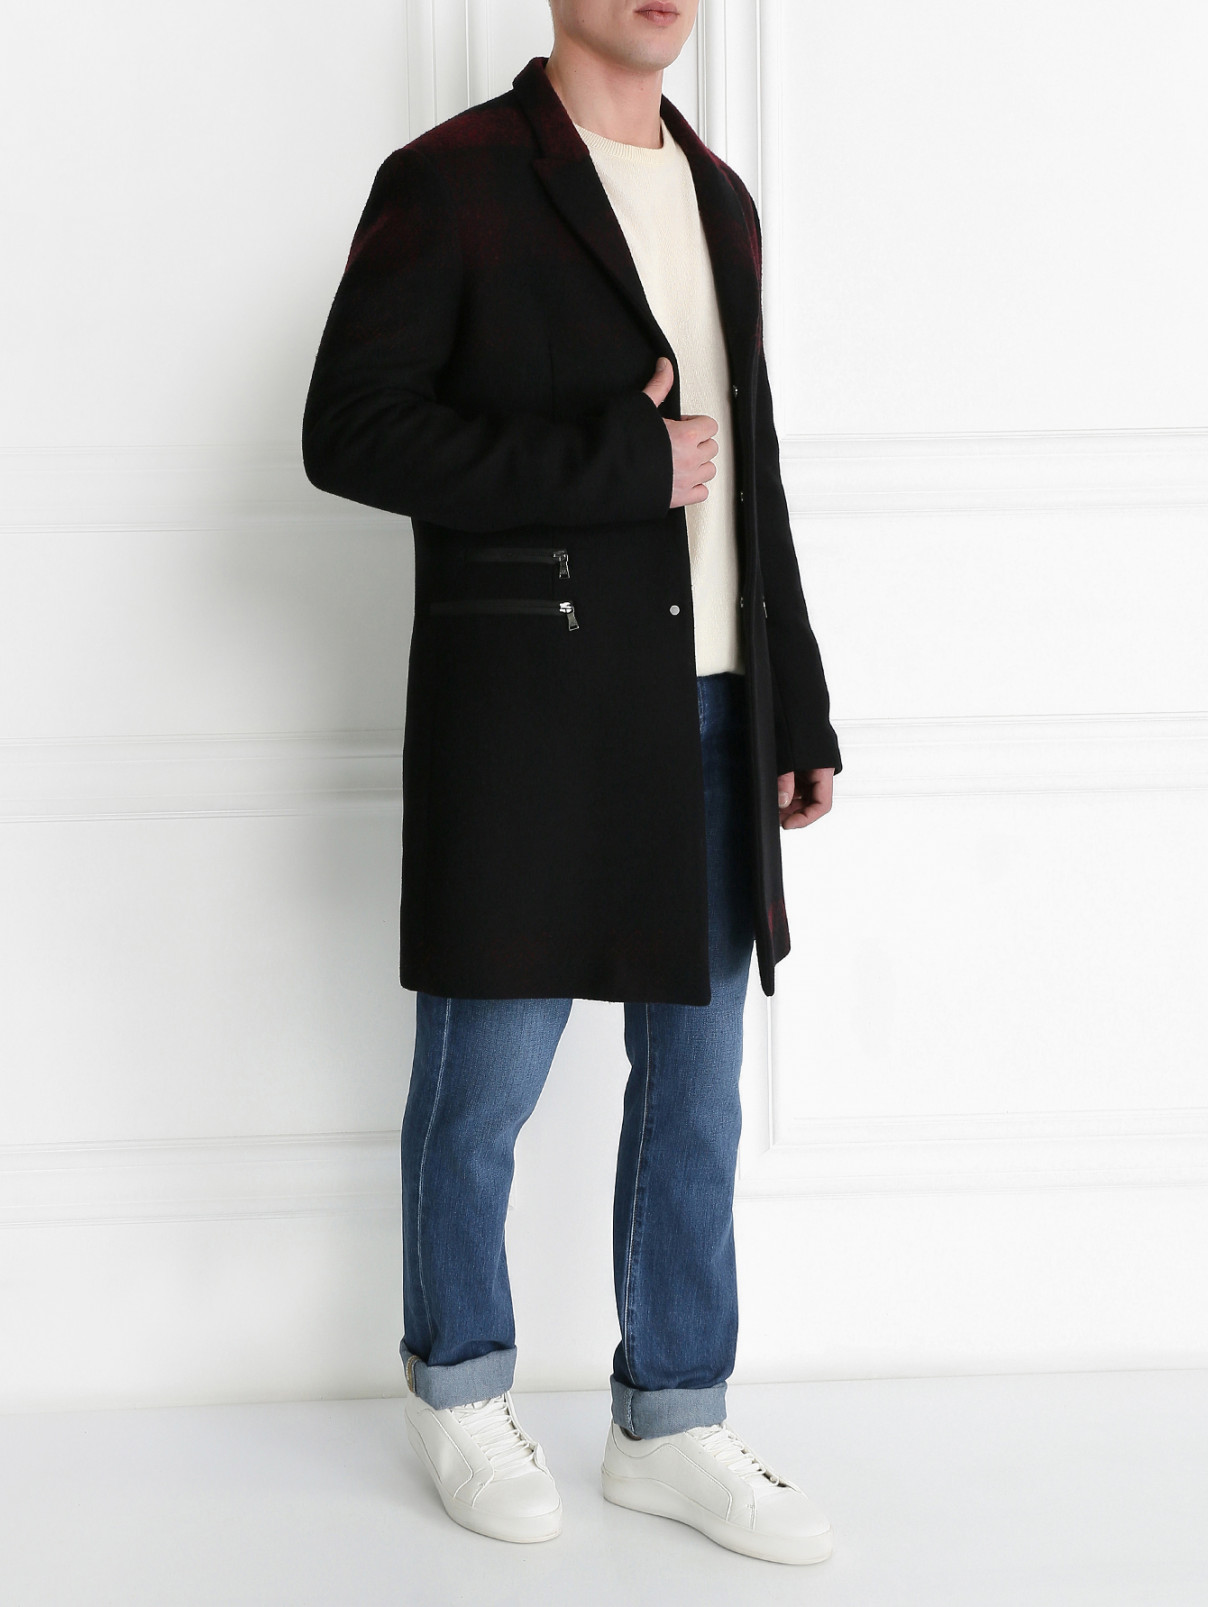 Пальто однобортное из шерсти NEIL BARRETT  –  Модель Общий вид  – Цвет:  Черный